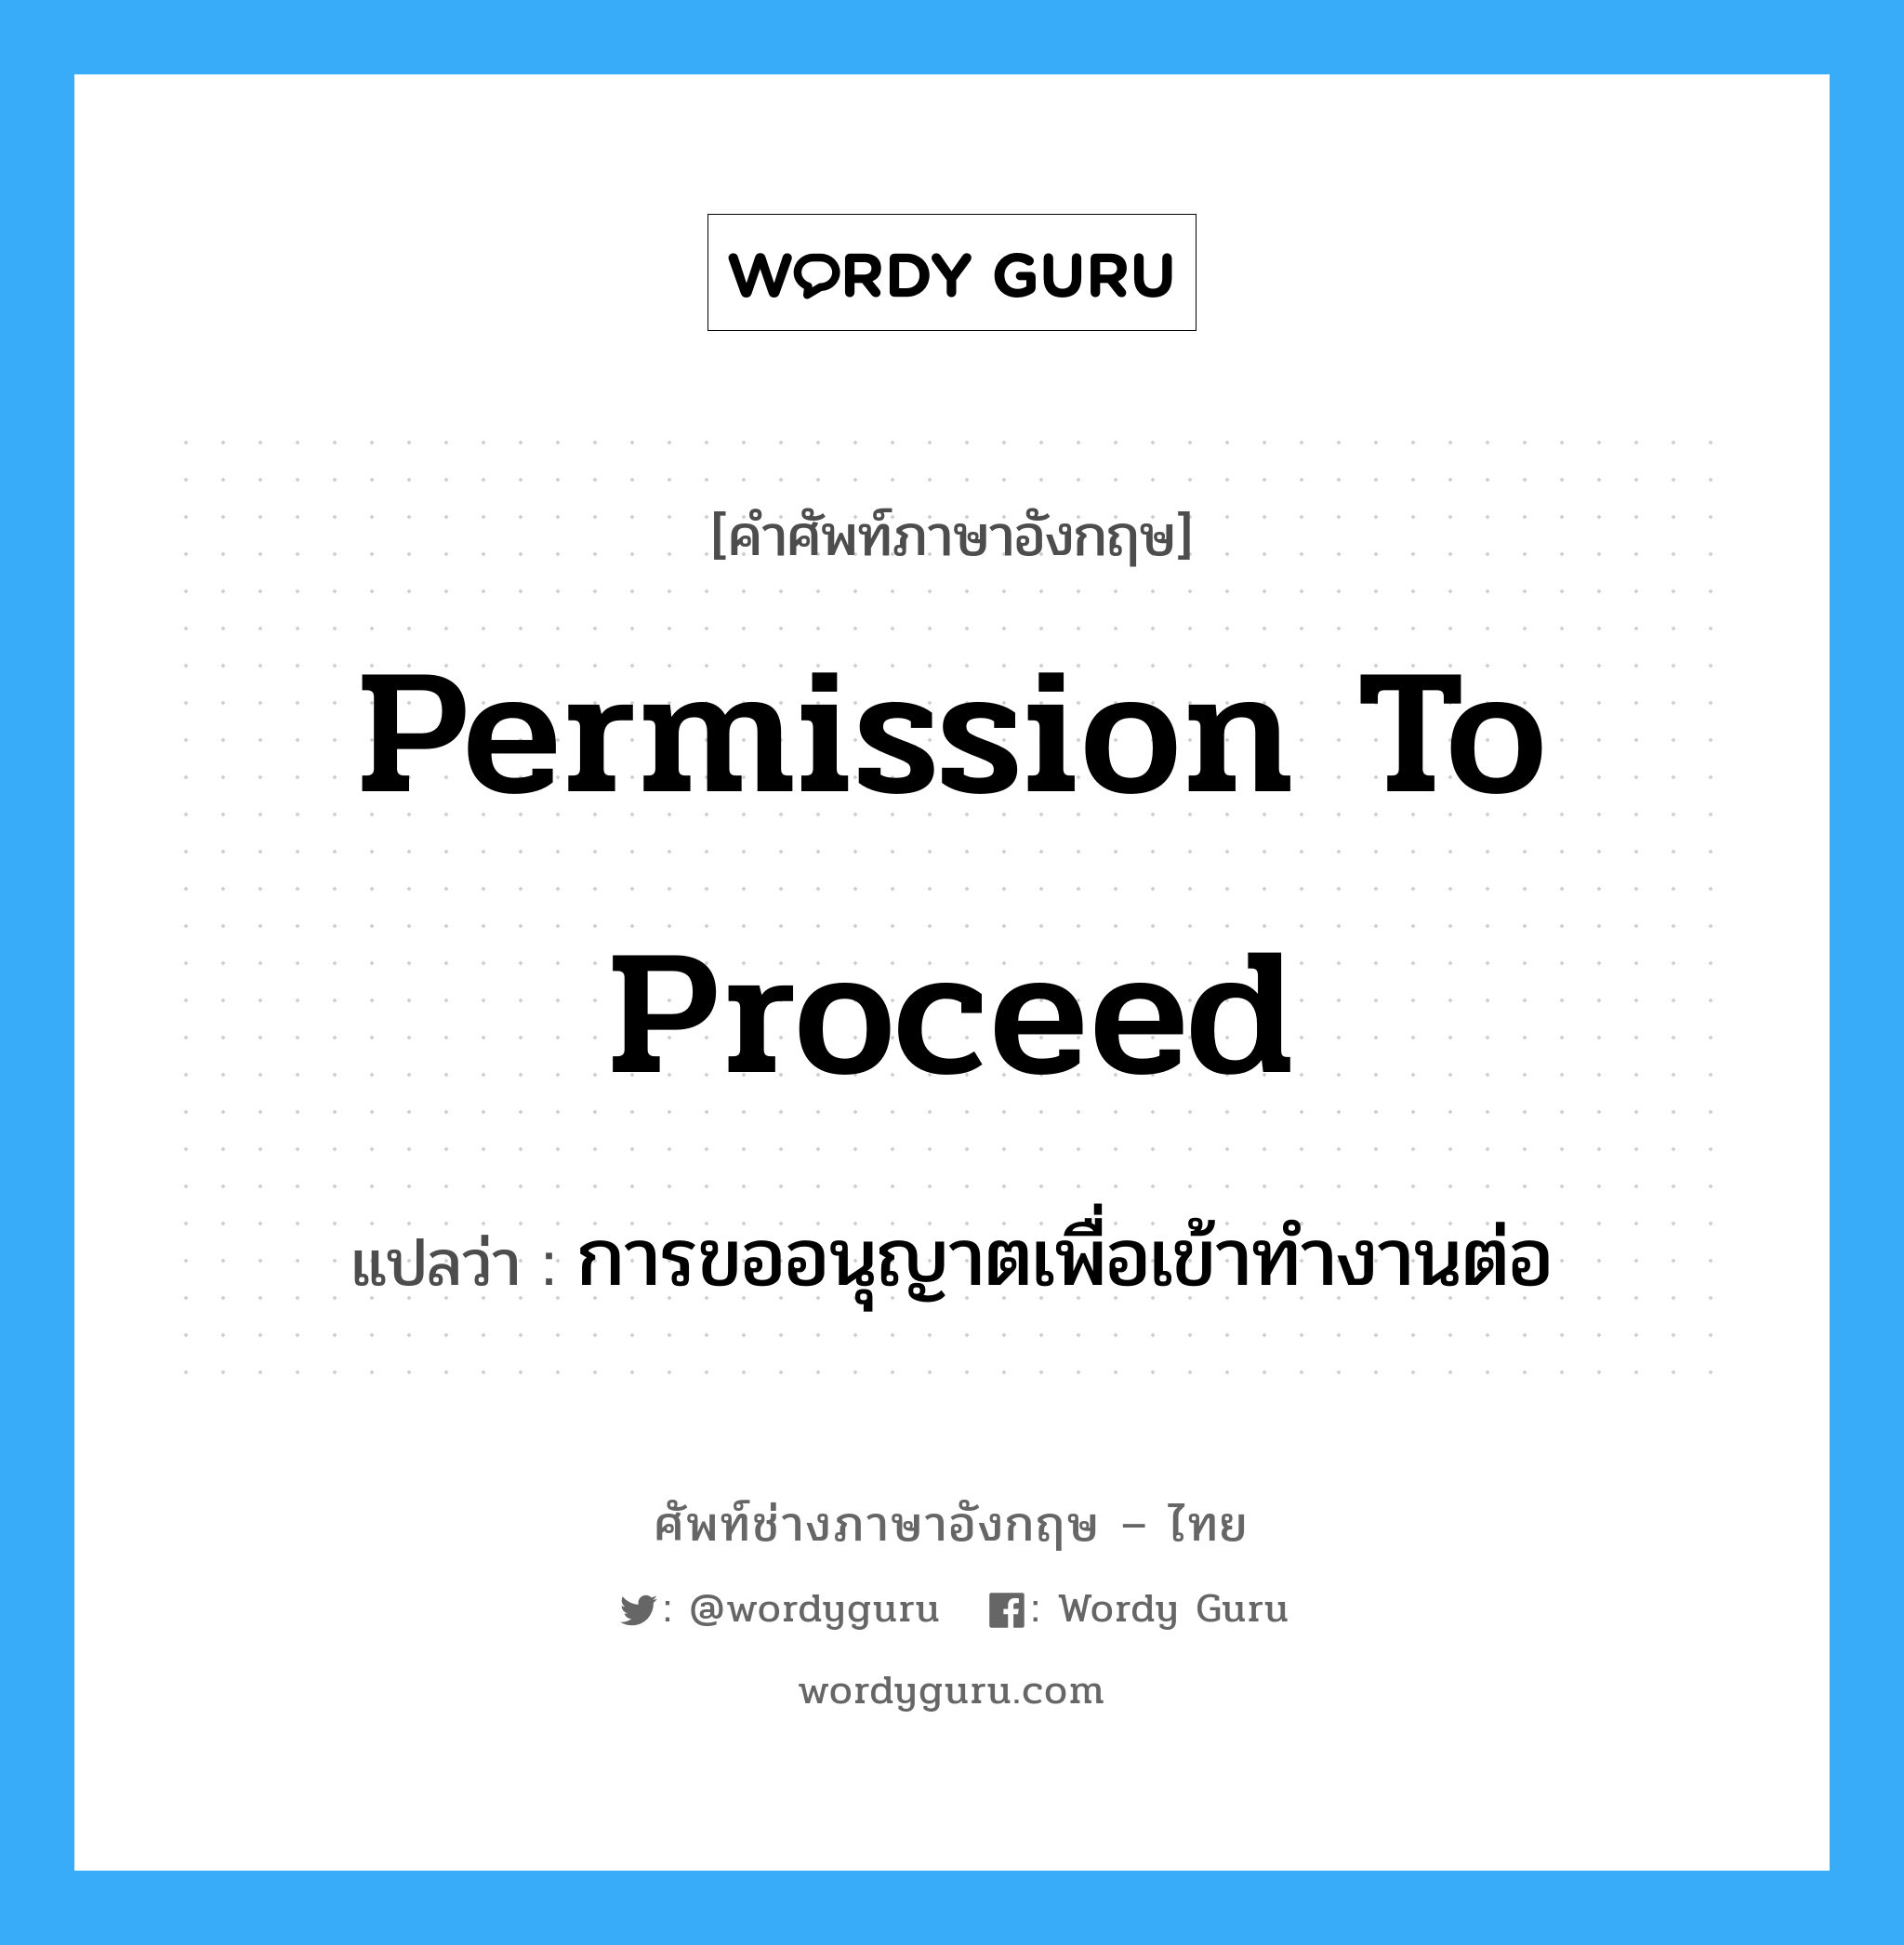 permission to proceed แปลว่า?, คำศัพท์ช่างภาษาอังกฤษ - ไทย permission to proceed คำศัพท์ภาษาอังกฤษ permission to proceed แปลว่า การขออนุญาตเพื่อเข้าทำงานต่อ